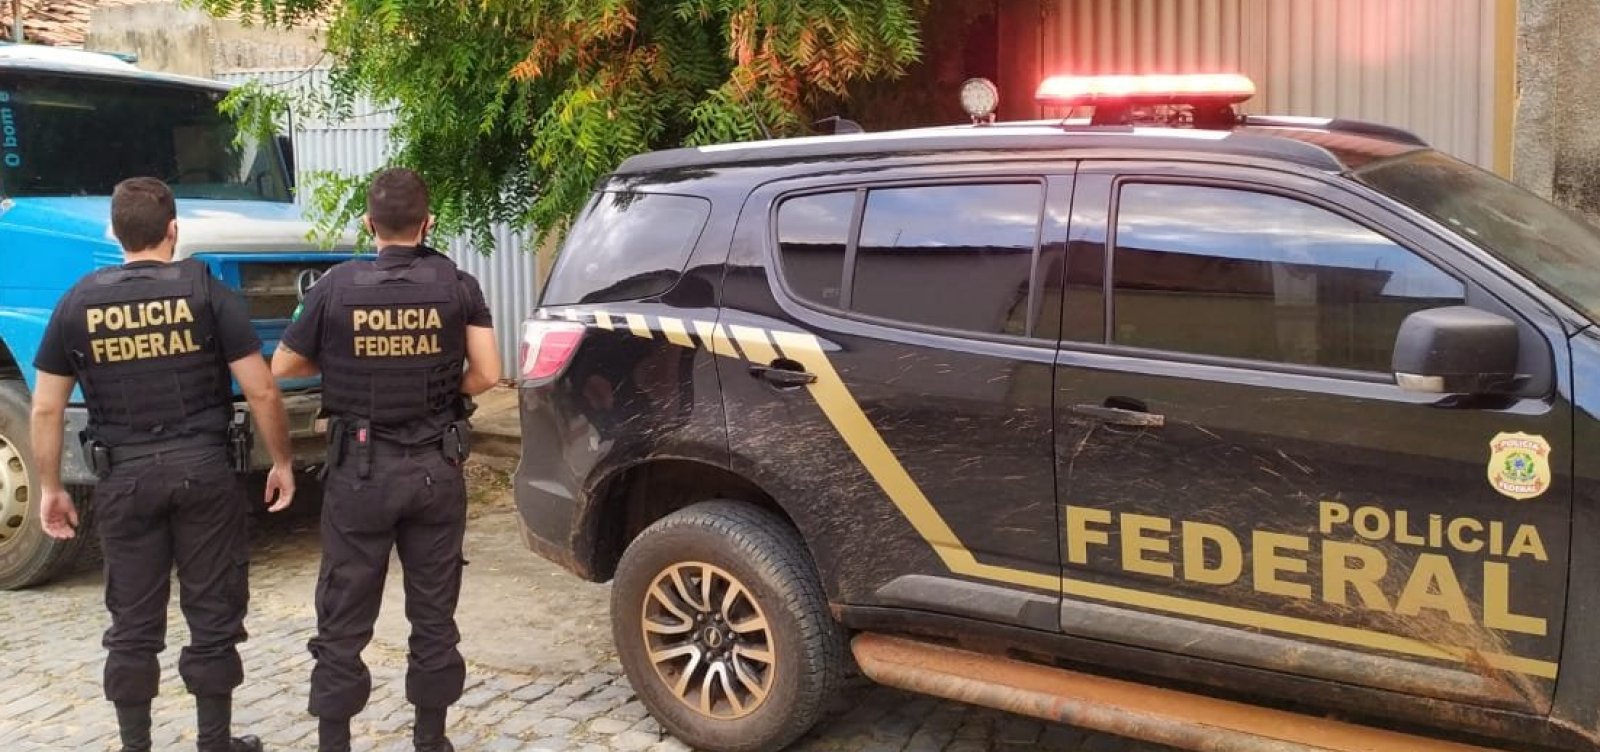 Operação da PF investiga suspeito de fraudar auxílio emergencial com contas fantasmas 